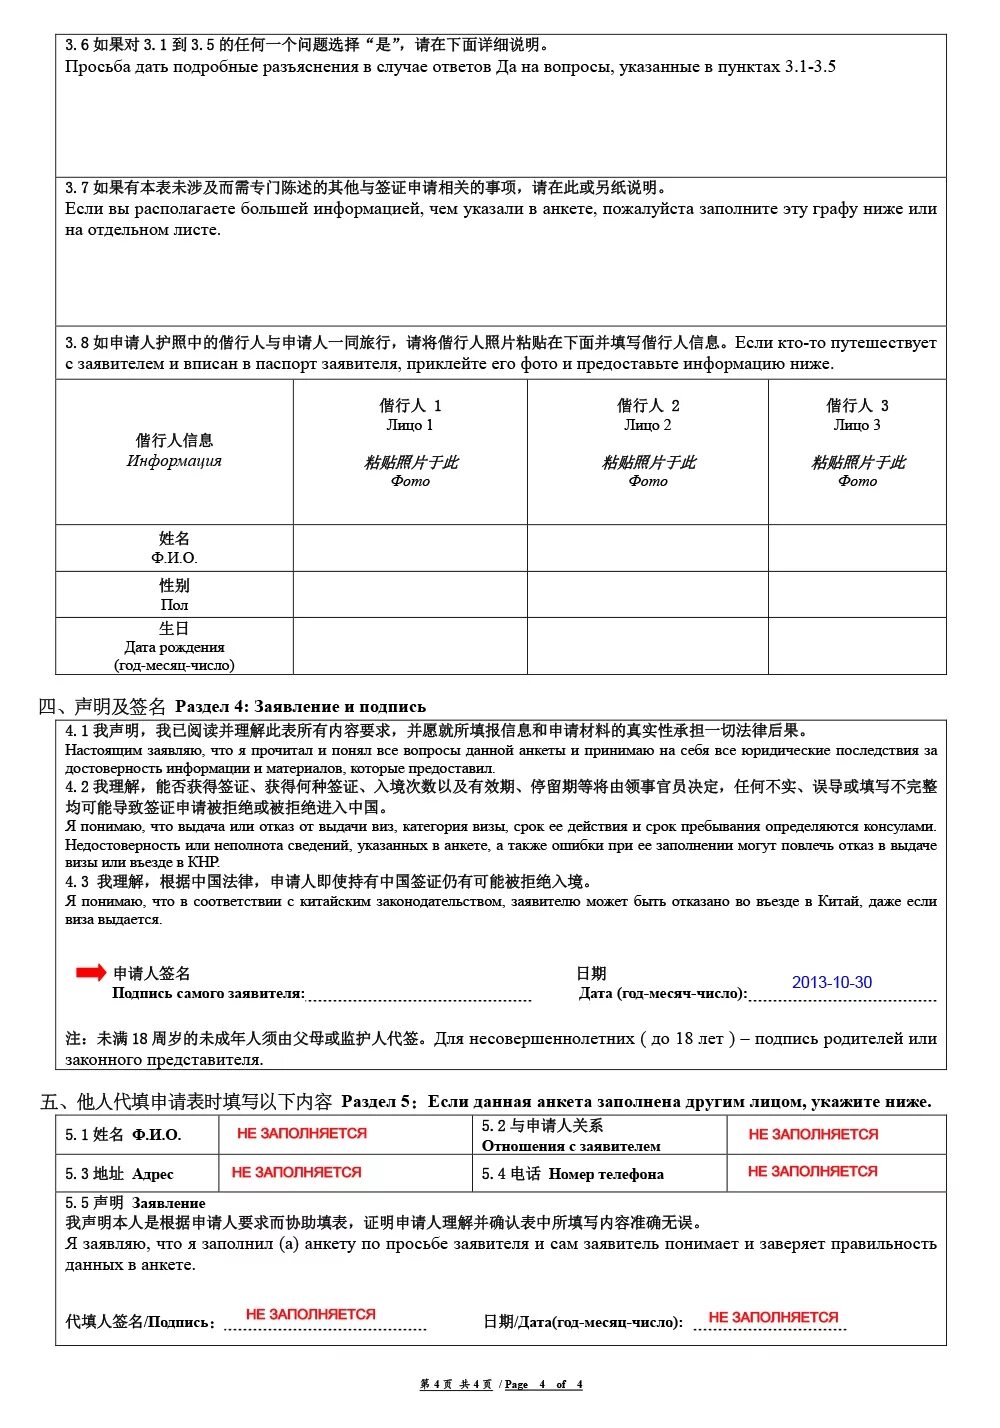 Виза в китай анкета. Пример заполнения анкеты на китайскую визу. Пример заполнения анкеты на визу в Китай. Заявление на китайскую визу образец заполнения. Образец заполнения заявления на визу в Китай.